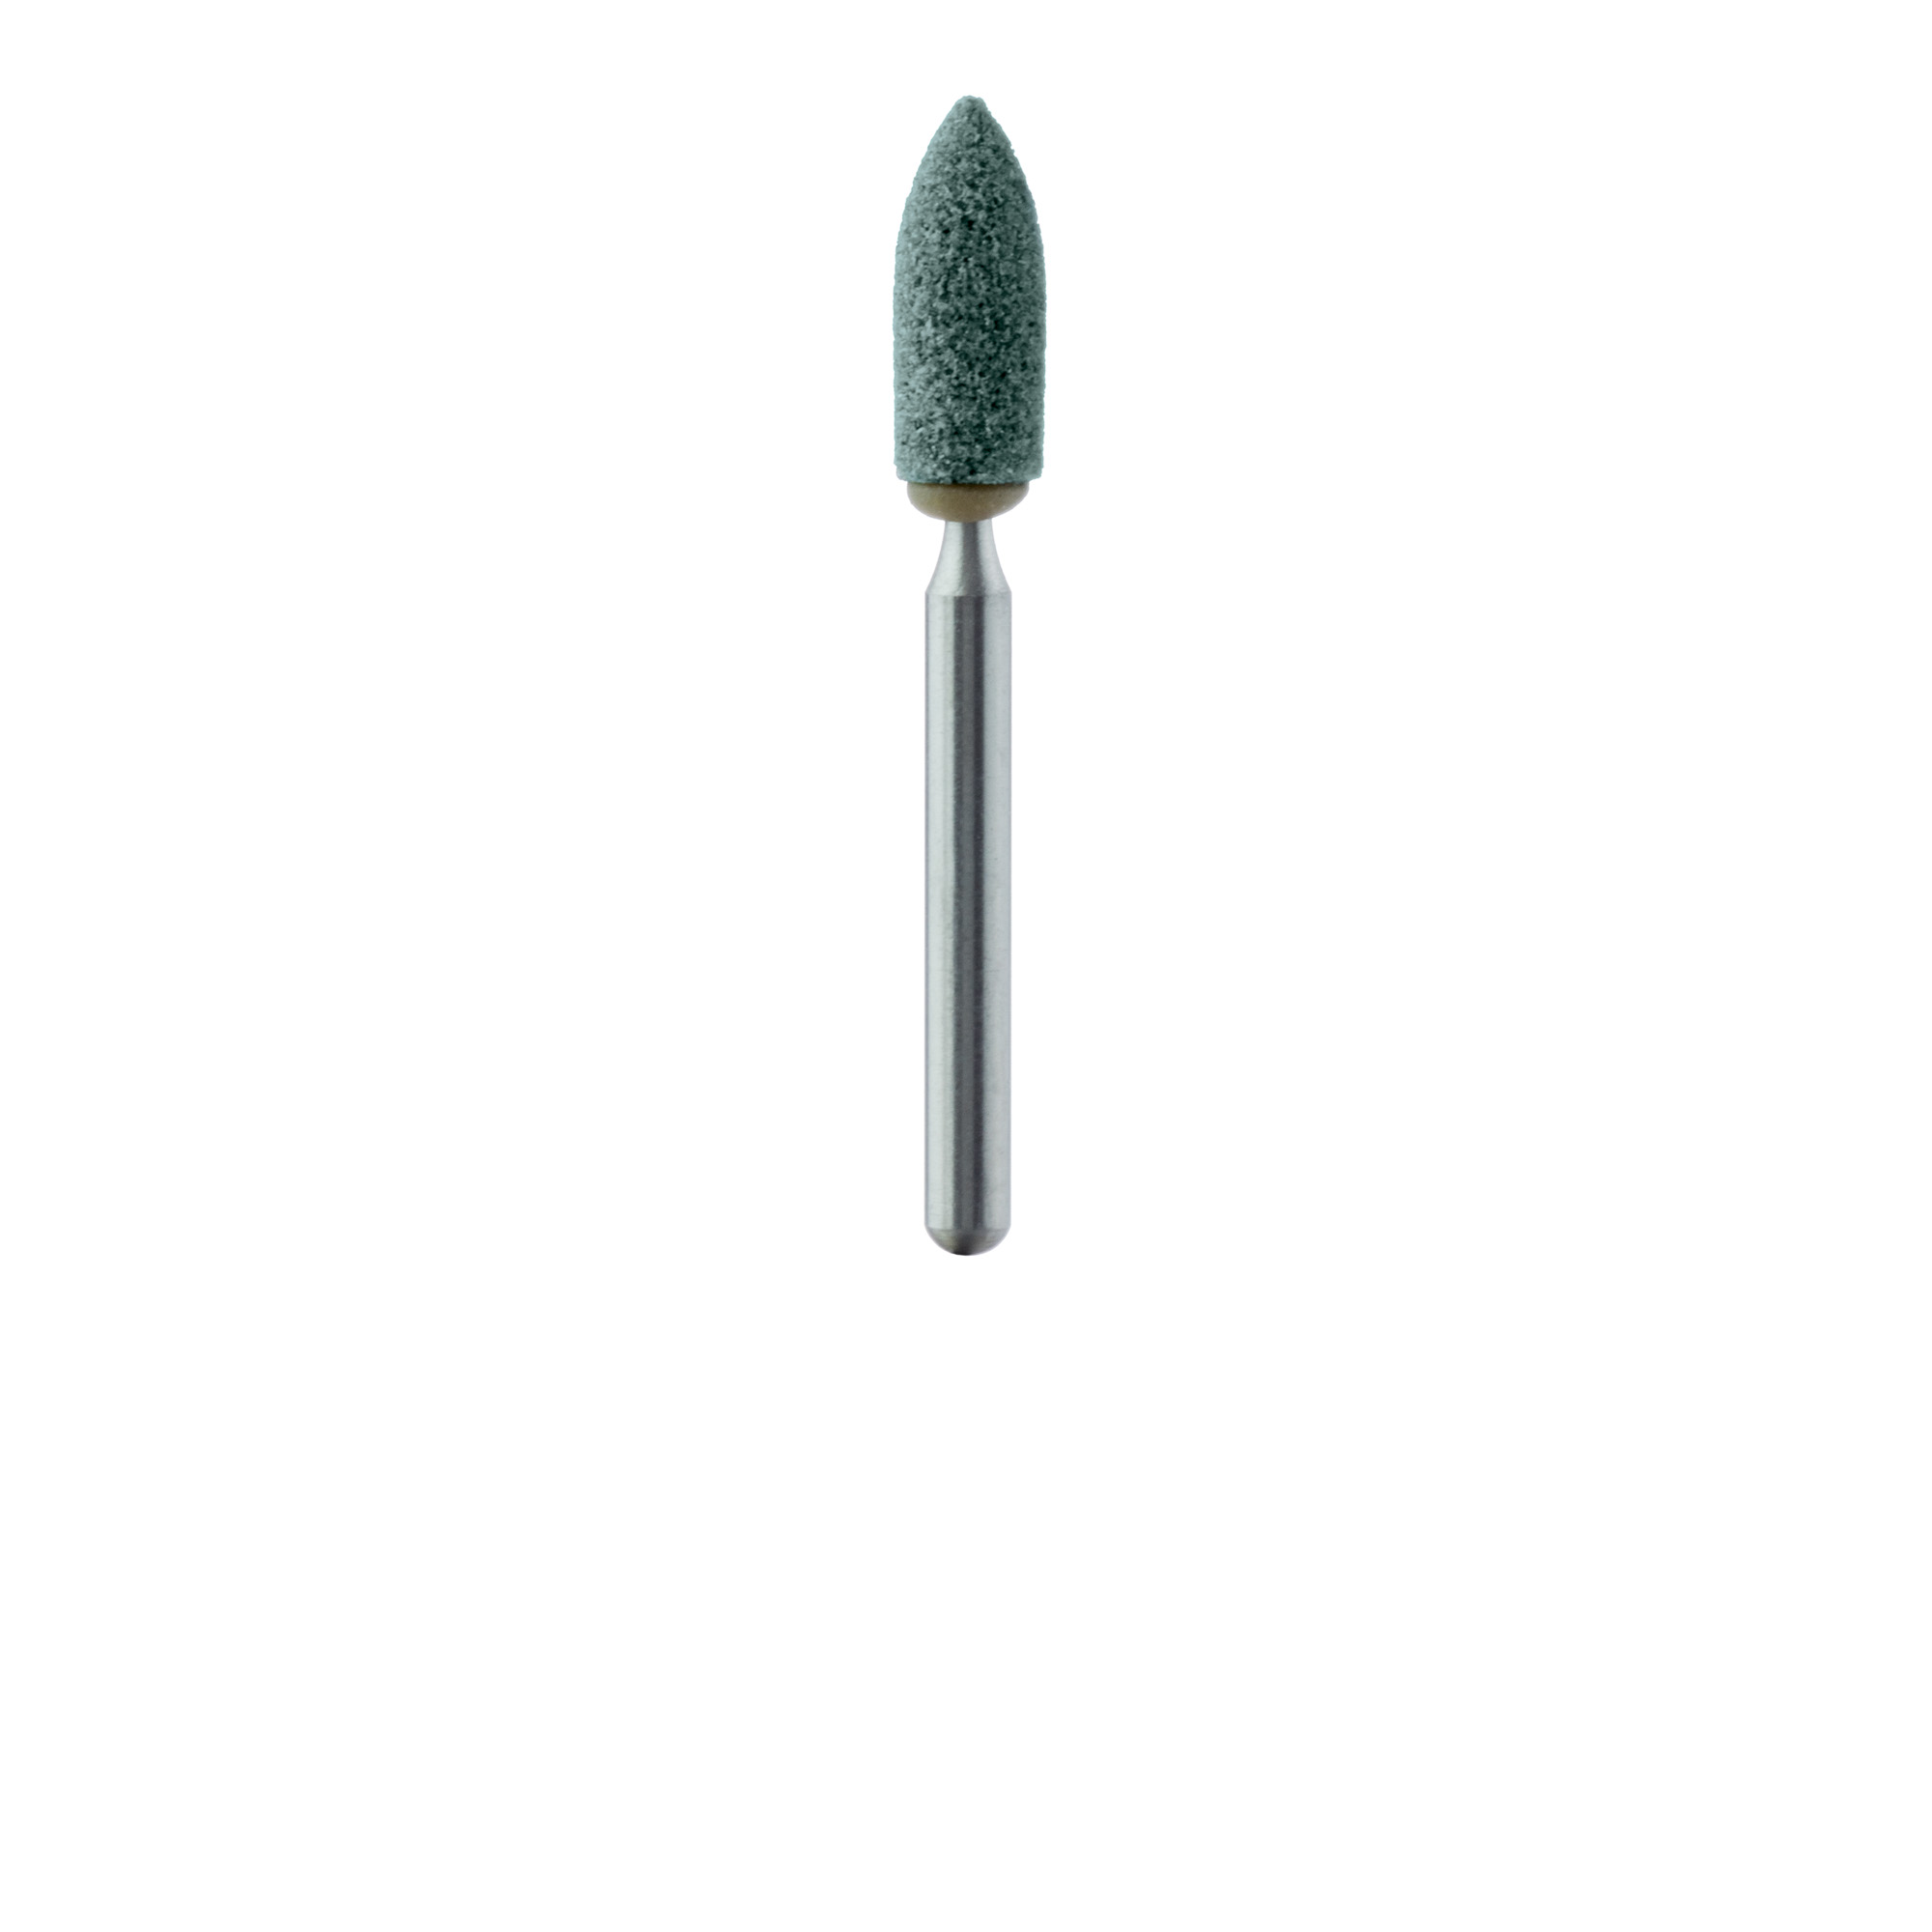 661F-025-FG-GRN Abrasive, Green, Nose Cone, 2.5mm Ø, Fine, FG